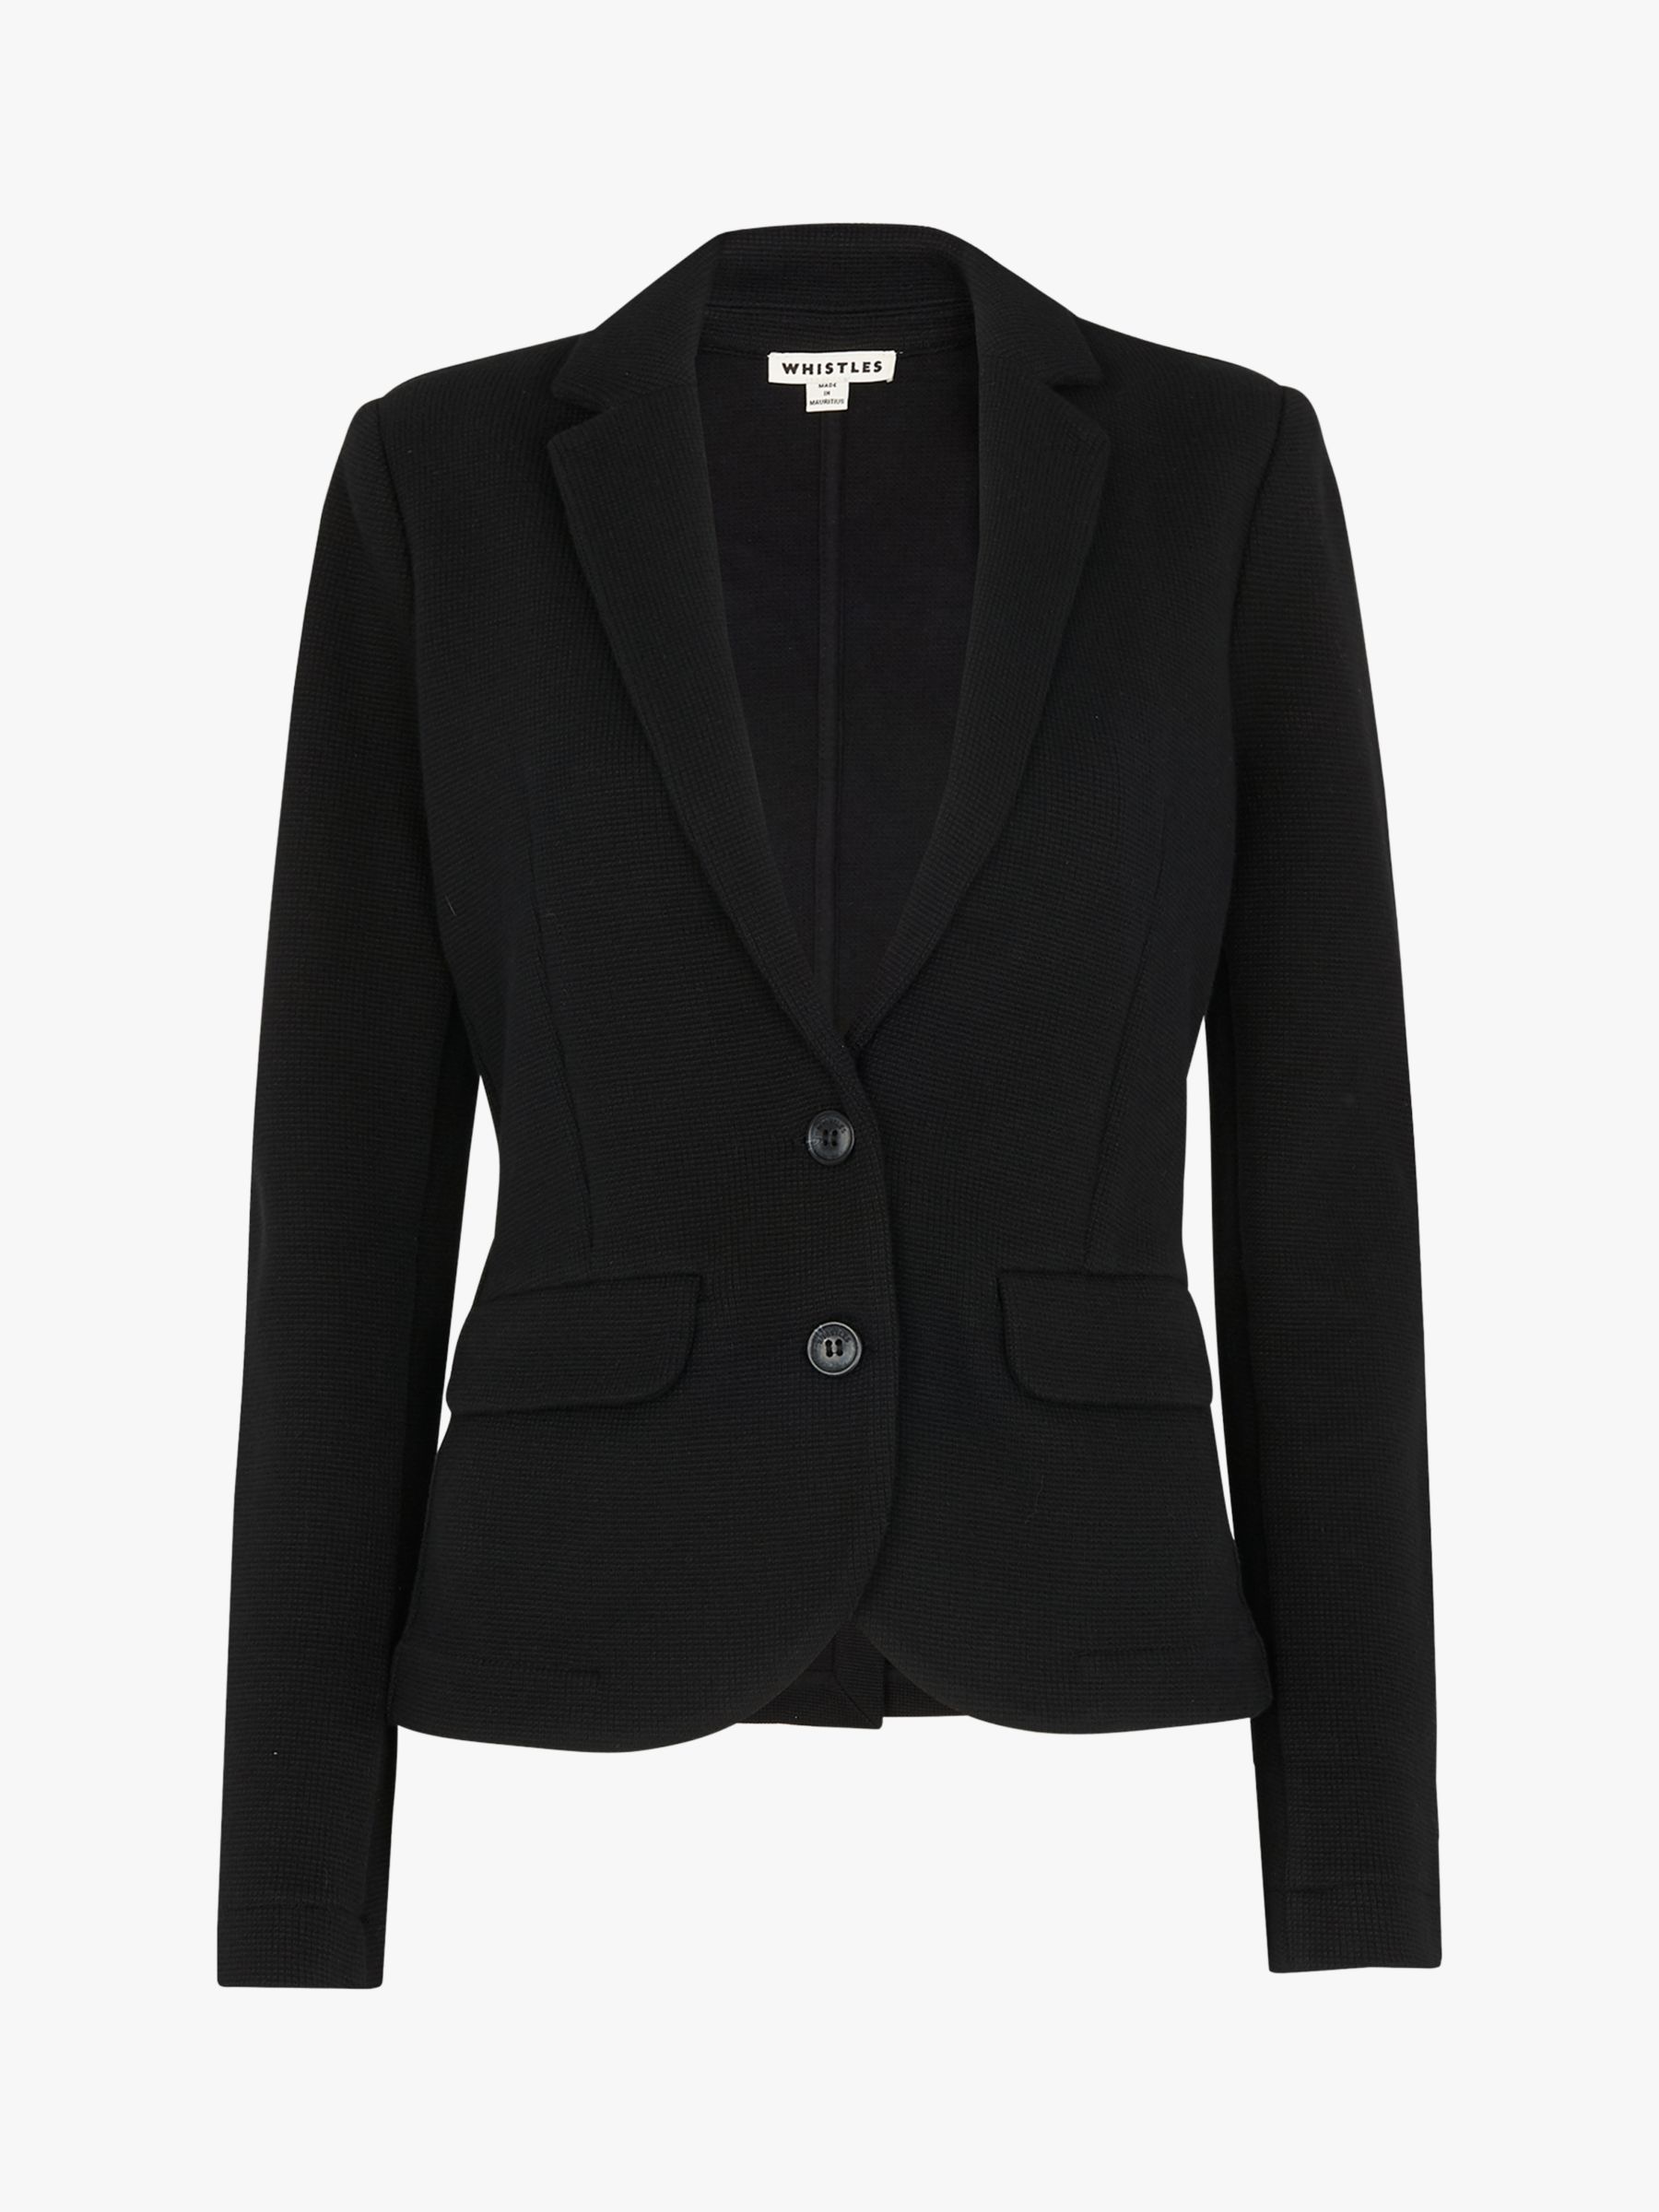 Whistles Slim Jersey Jacket, Black at John Lewis & Partners